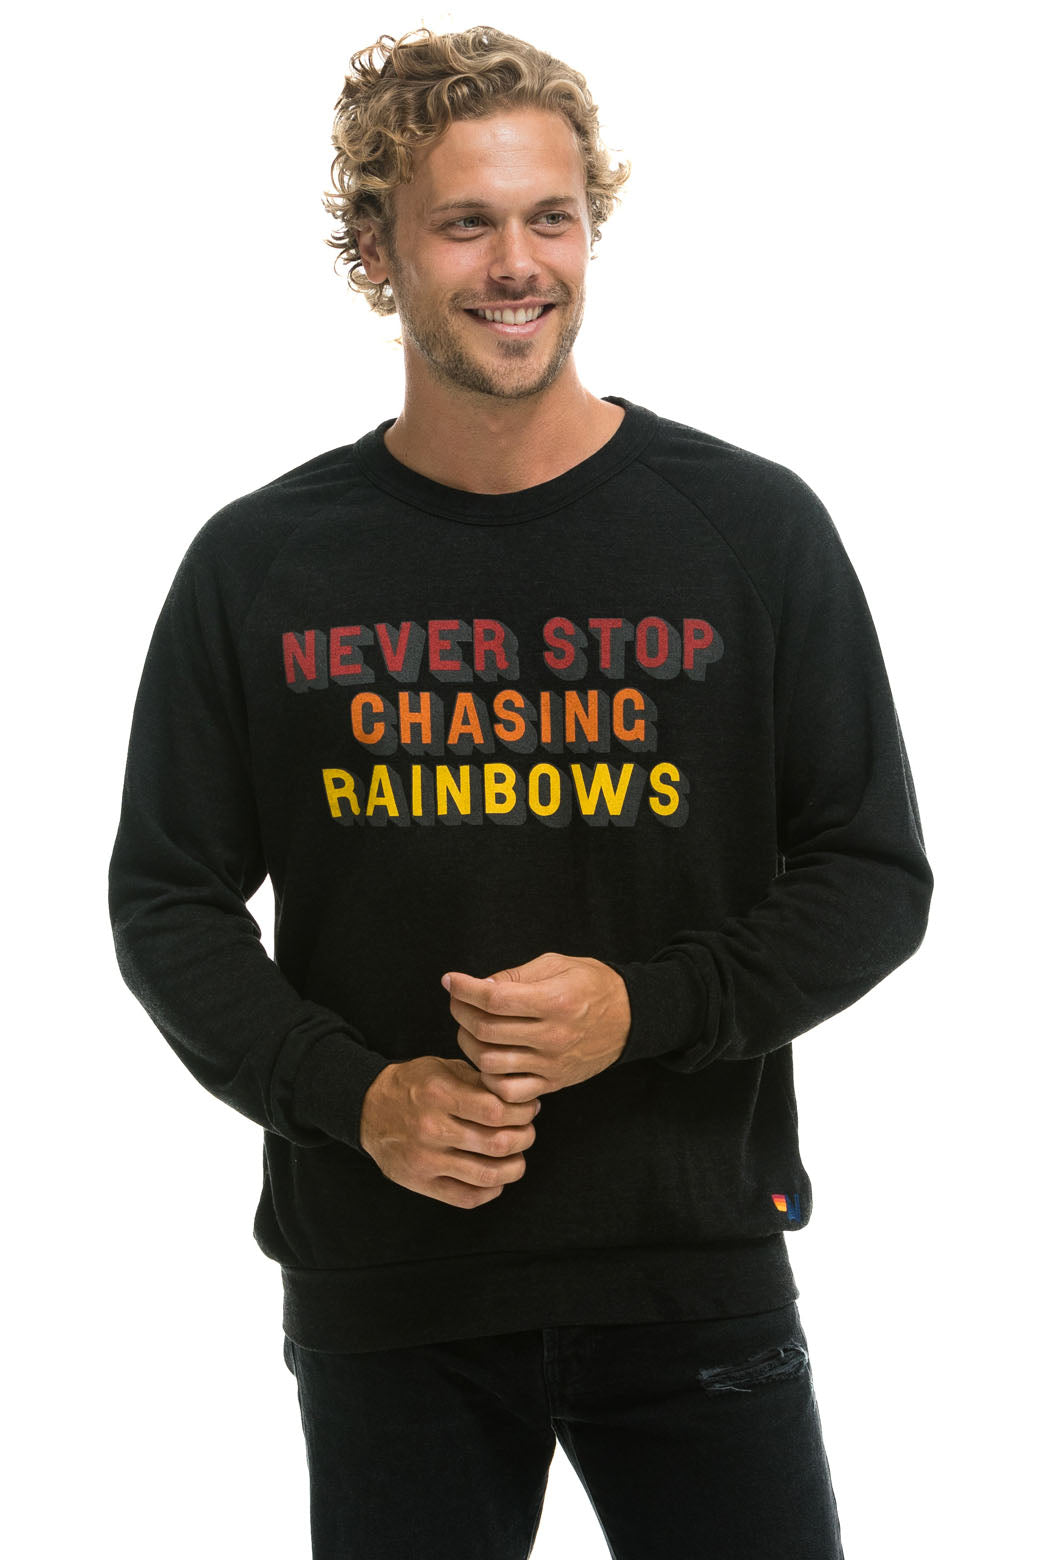 NEVER STOP CHASING RAINBOWS CREW SWEATSHIRT - BLACK Sweatshirt Aviator Nation 